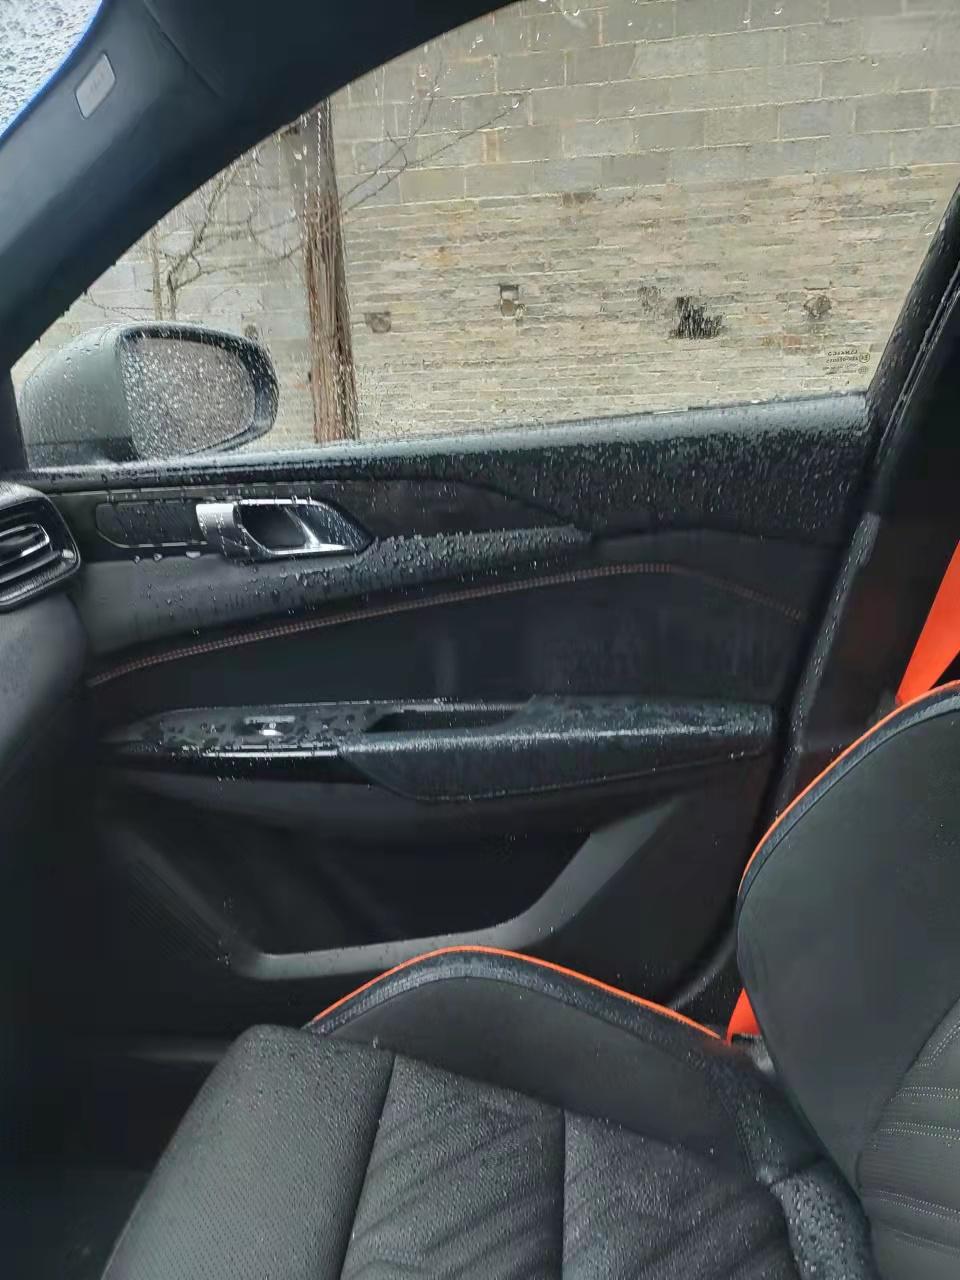 领克02 Hatchback 确实服了  一大早起来  四个车窗全部自动打开了淋了一晚上的雨  是质量问题嘛………